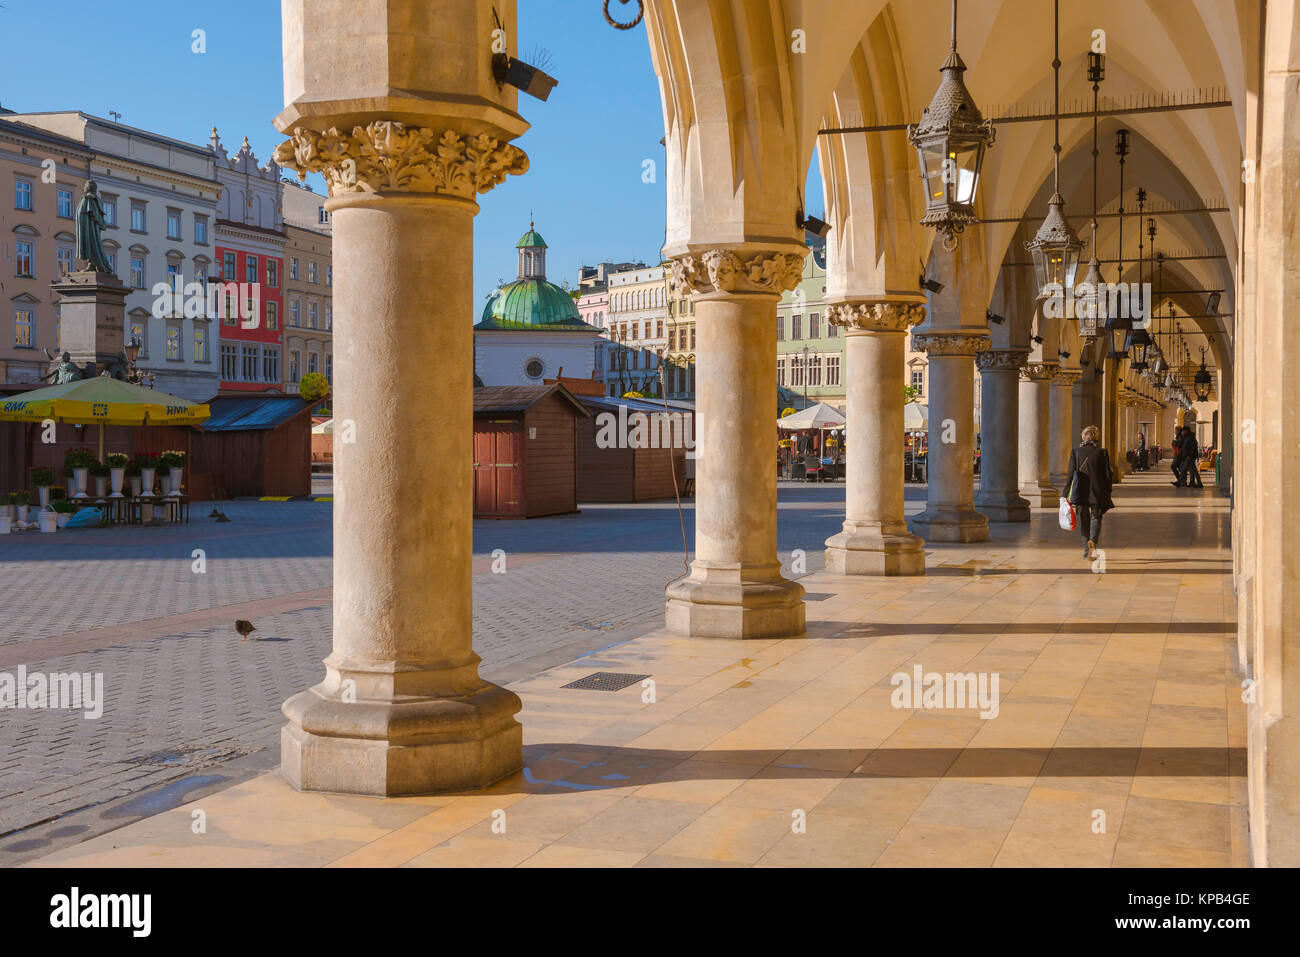 Pologne Arcade, vue d'une colonnade sur le côté est de l'ère de la Renaissance dans la Halle de la place du marché dans la vieille ville de Cracovie, Pologne. Banque D'Images